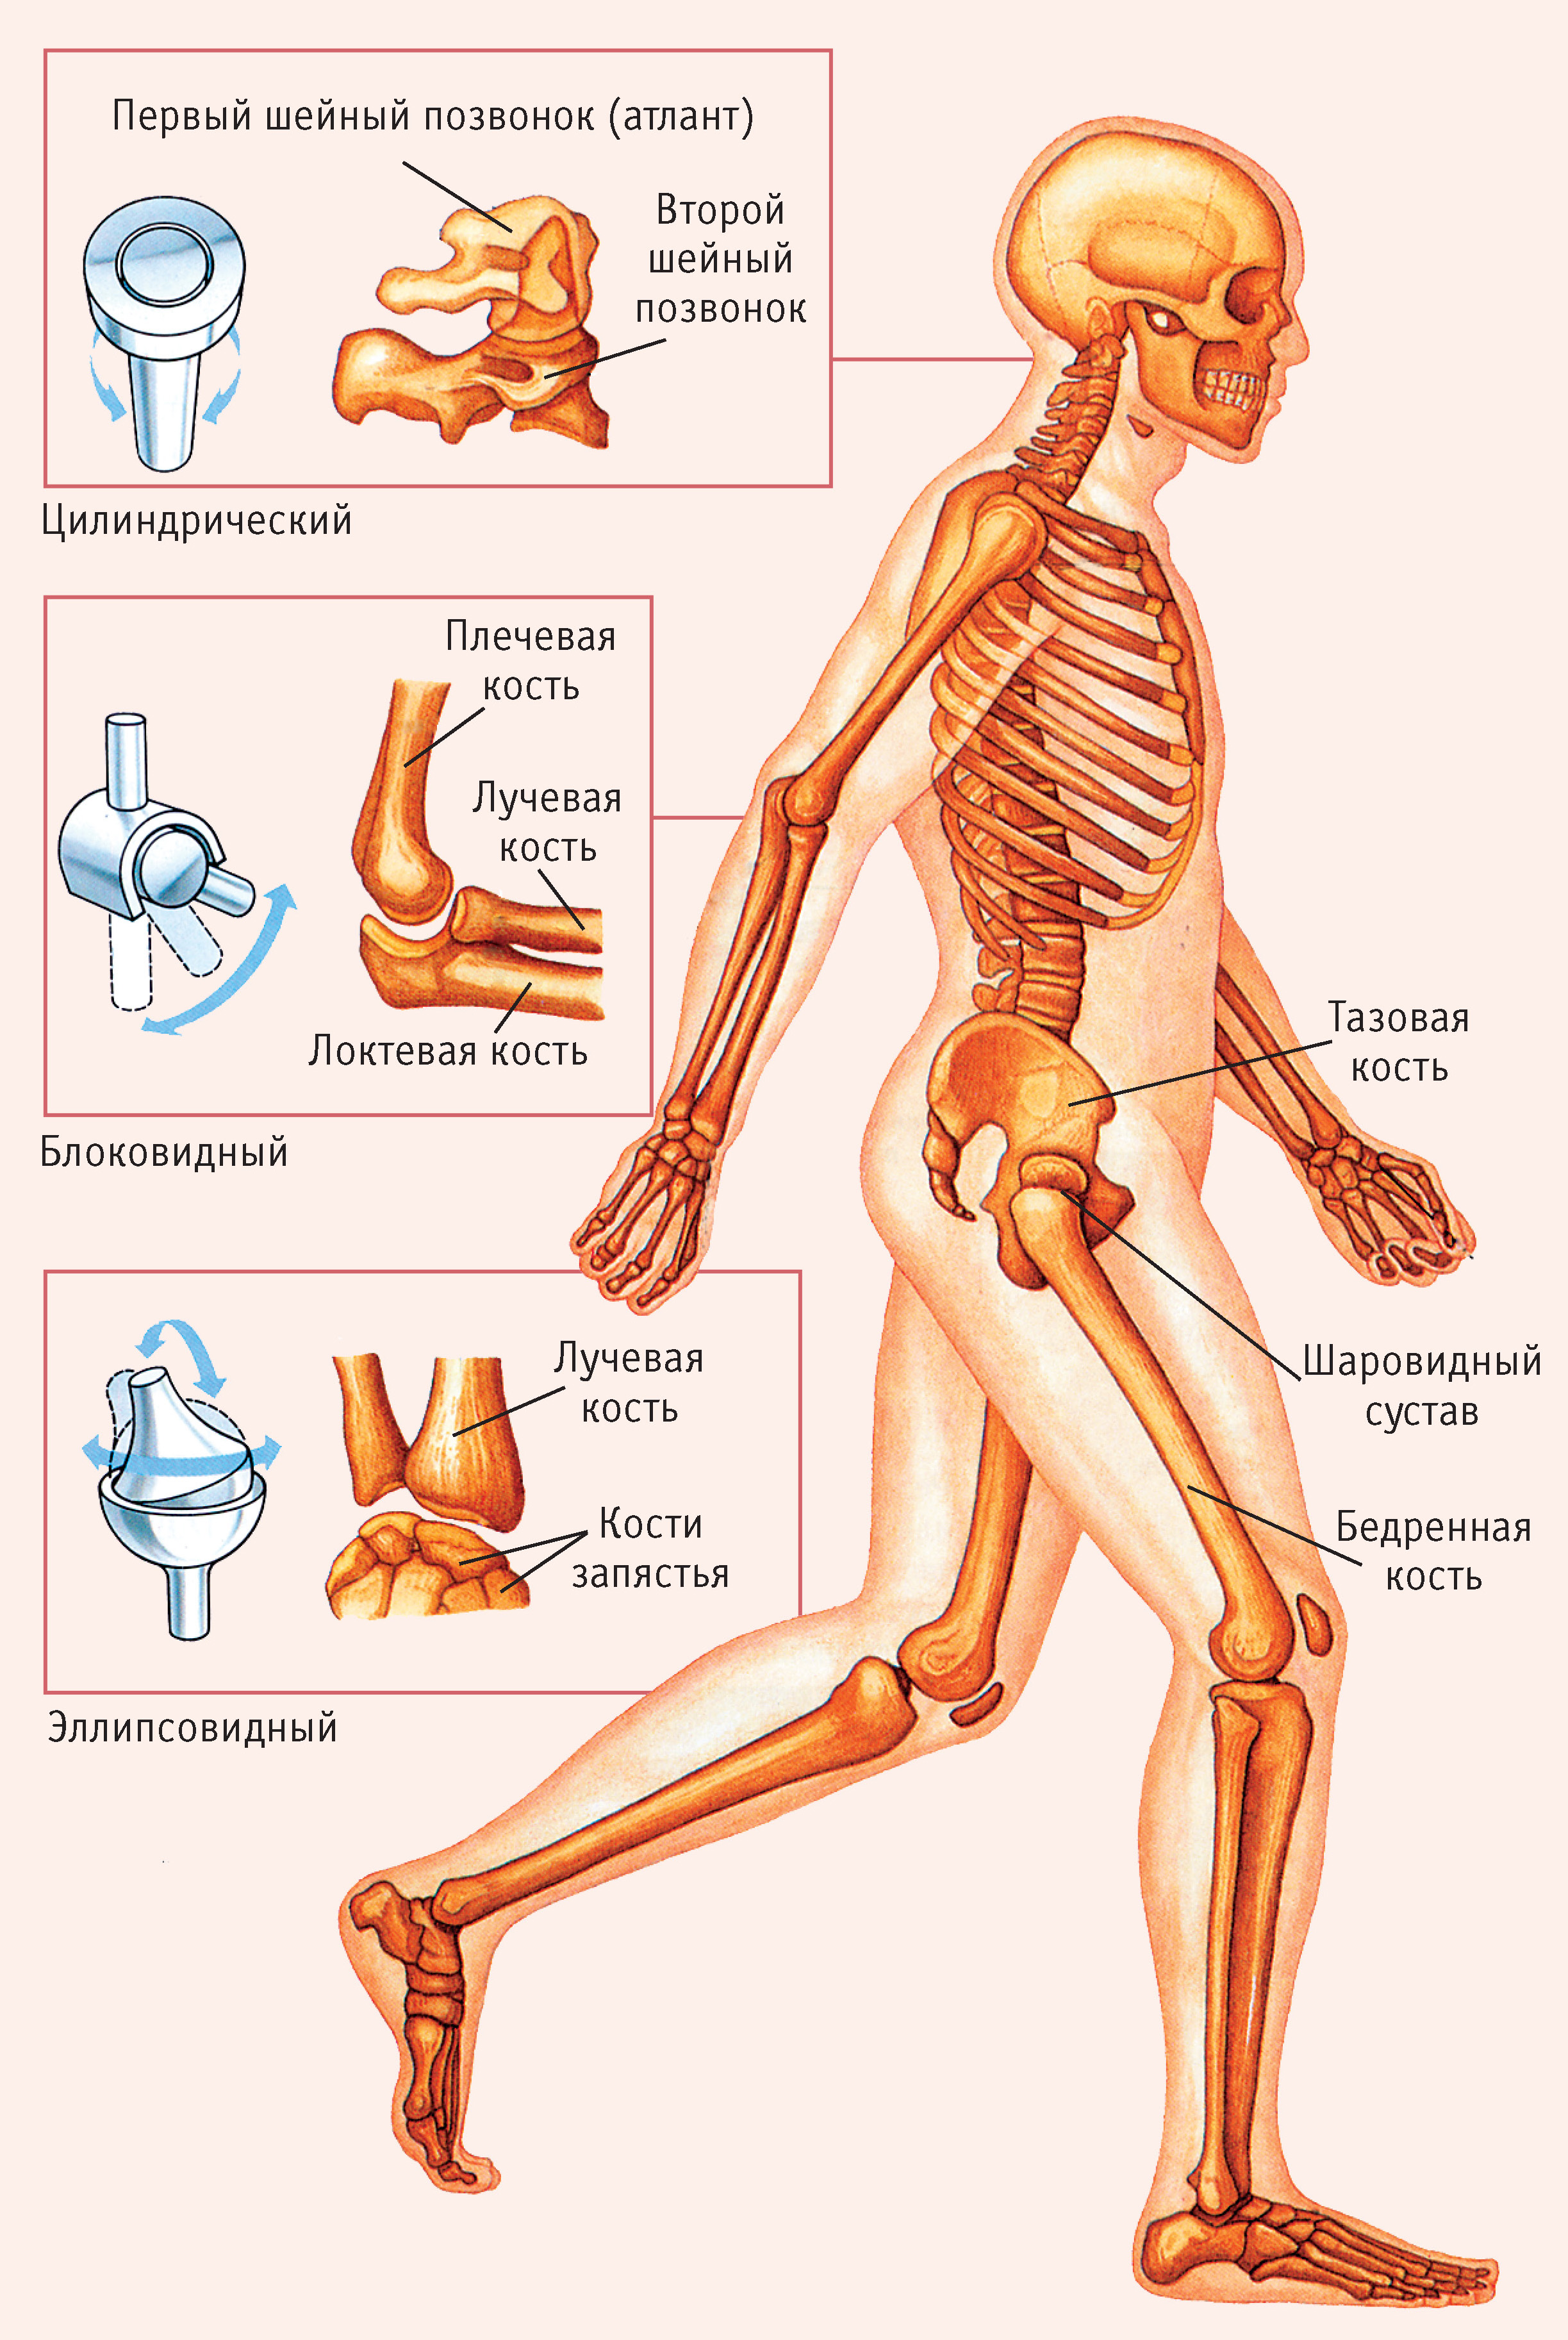 Рис. 3. Формы суставов: атлант (первый шейный позвонок), второй шейный позвонок, цилиндрический сустав, плечевая кость, локтевая кость, лучевая кость, блоковидный сустав, лучевая кость, кость запястья, эллипсовидный сустав, тазовая кость, шаровидный сустав, бедренная кость 